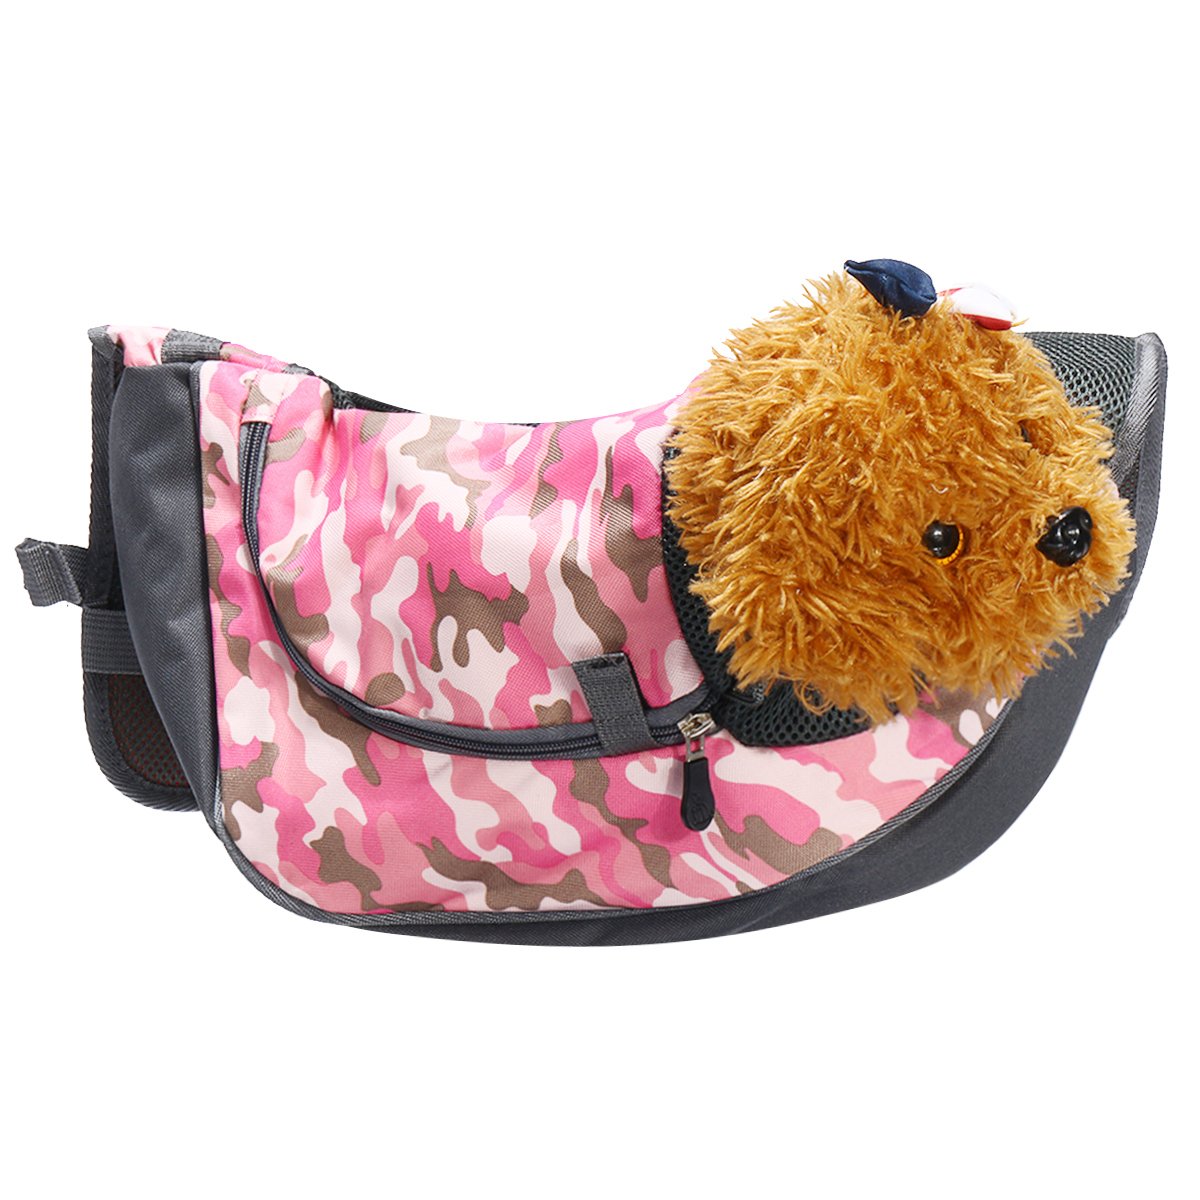 Outdoor-Pet-Carrier-Bag-Breathable-Dog-Cat-Puppy-Bag-Outdoor-Shoulder-Travel-Bag-1556933-8